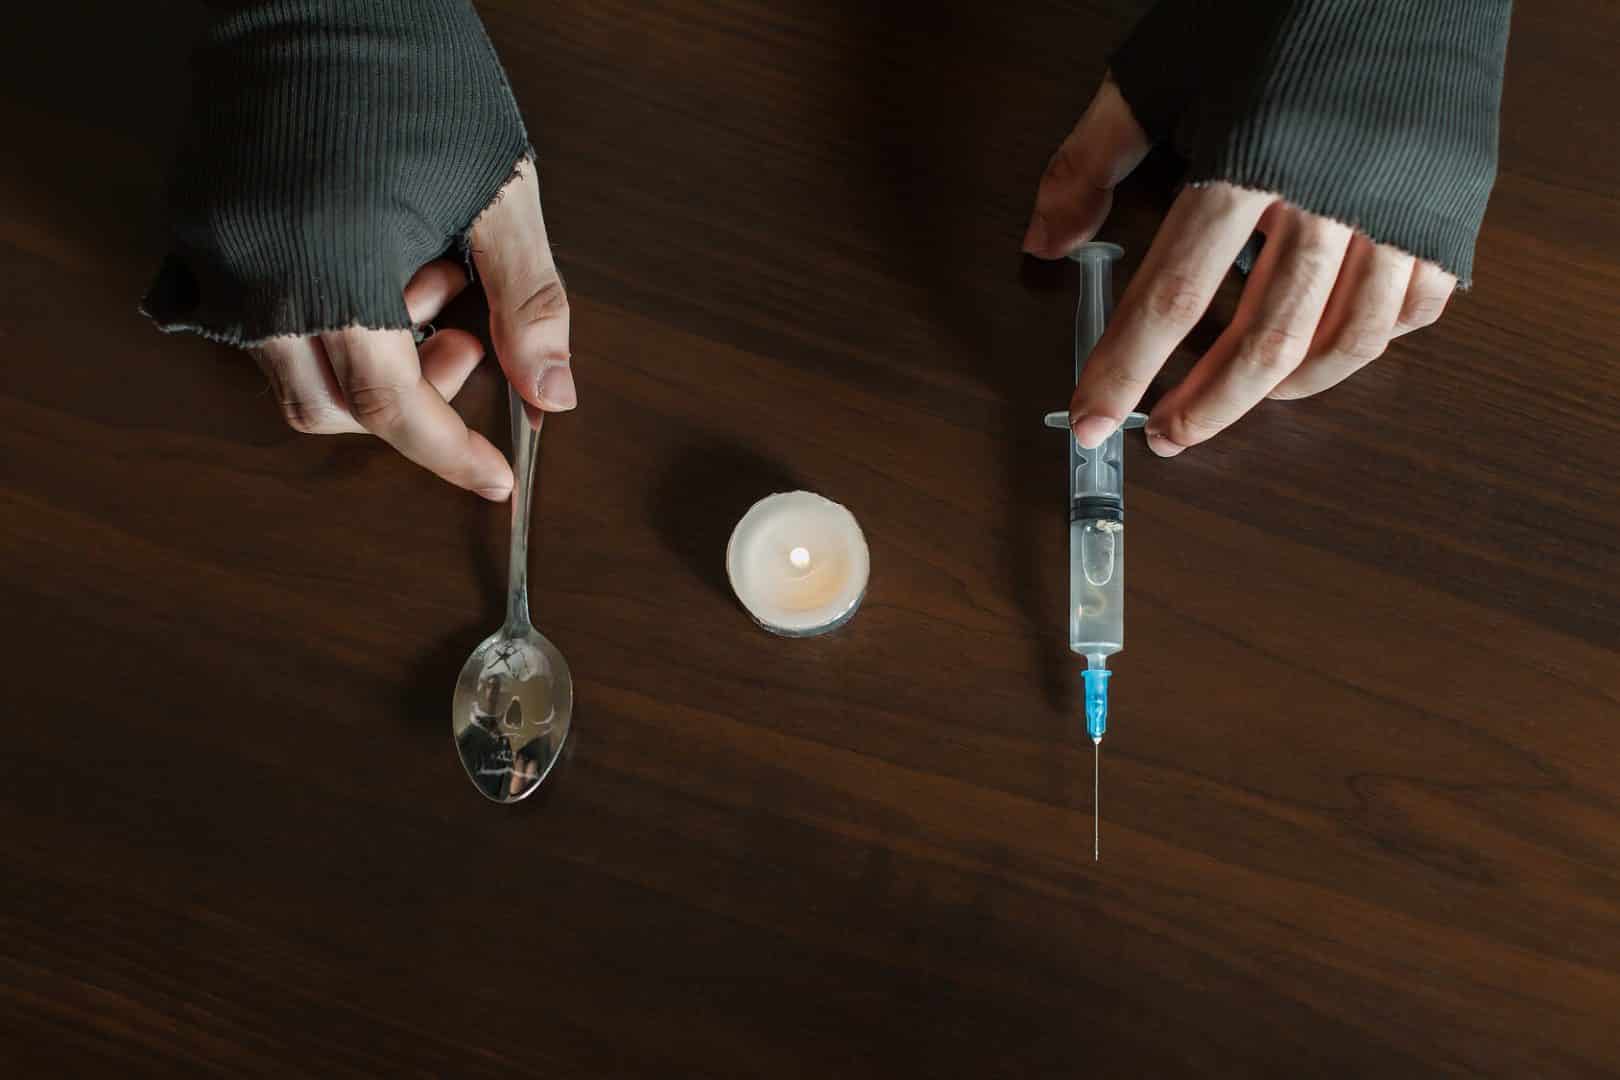 Próxima dose: Efeitos e reações da heroína no organismo